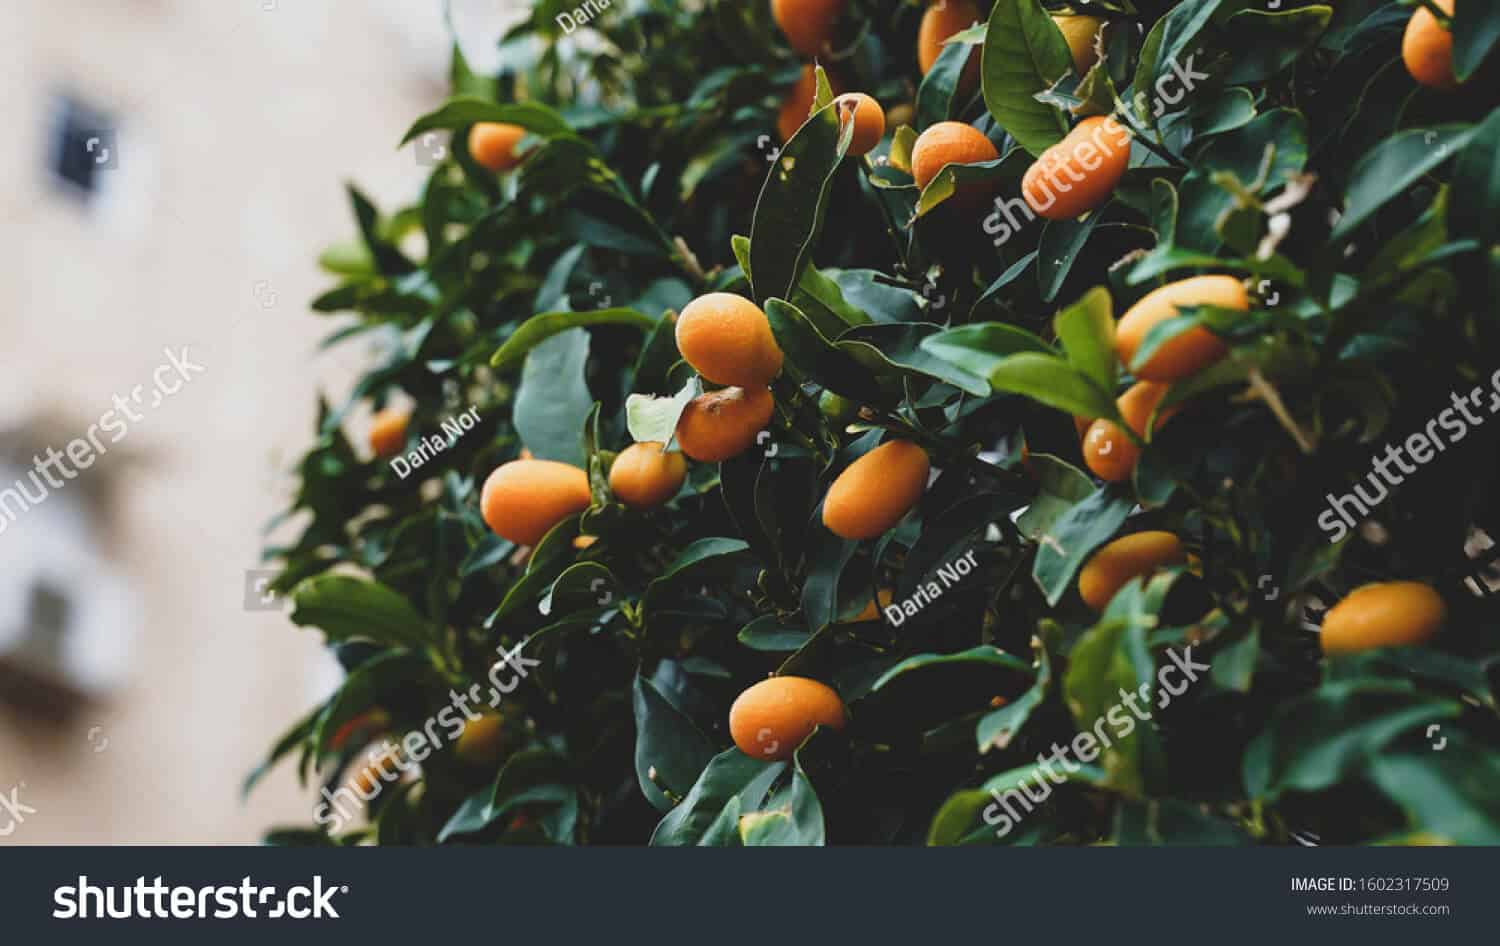 26 ngàn hình ảnh cây quất ngày Tết chất lượng cao trên Shutterstock